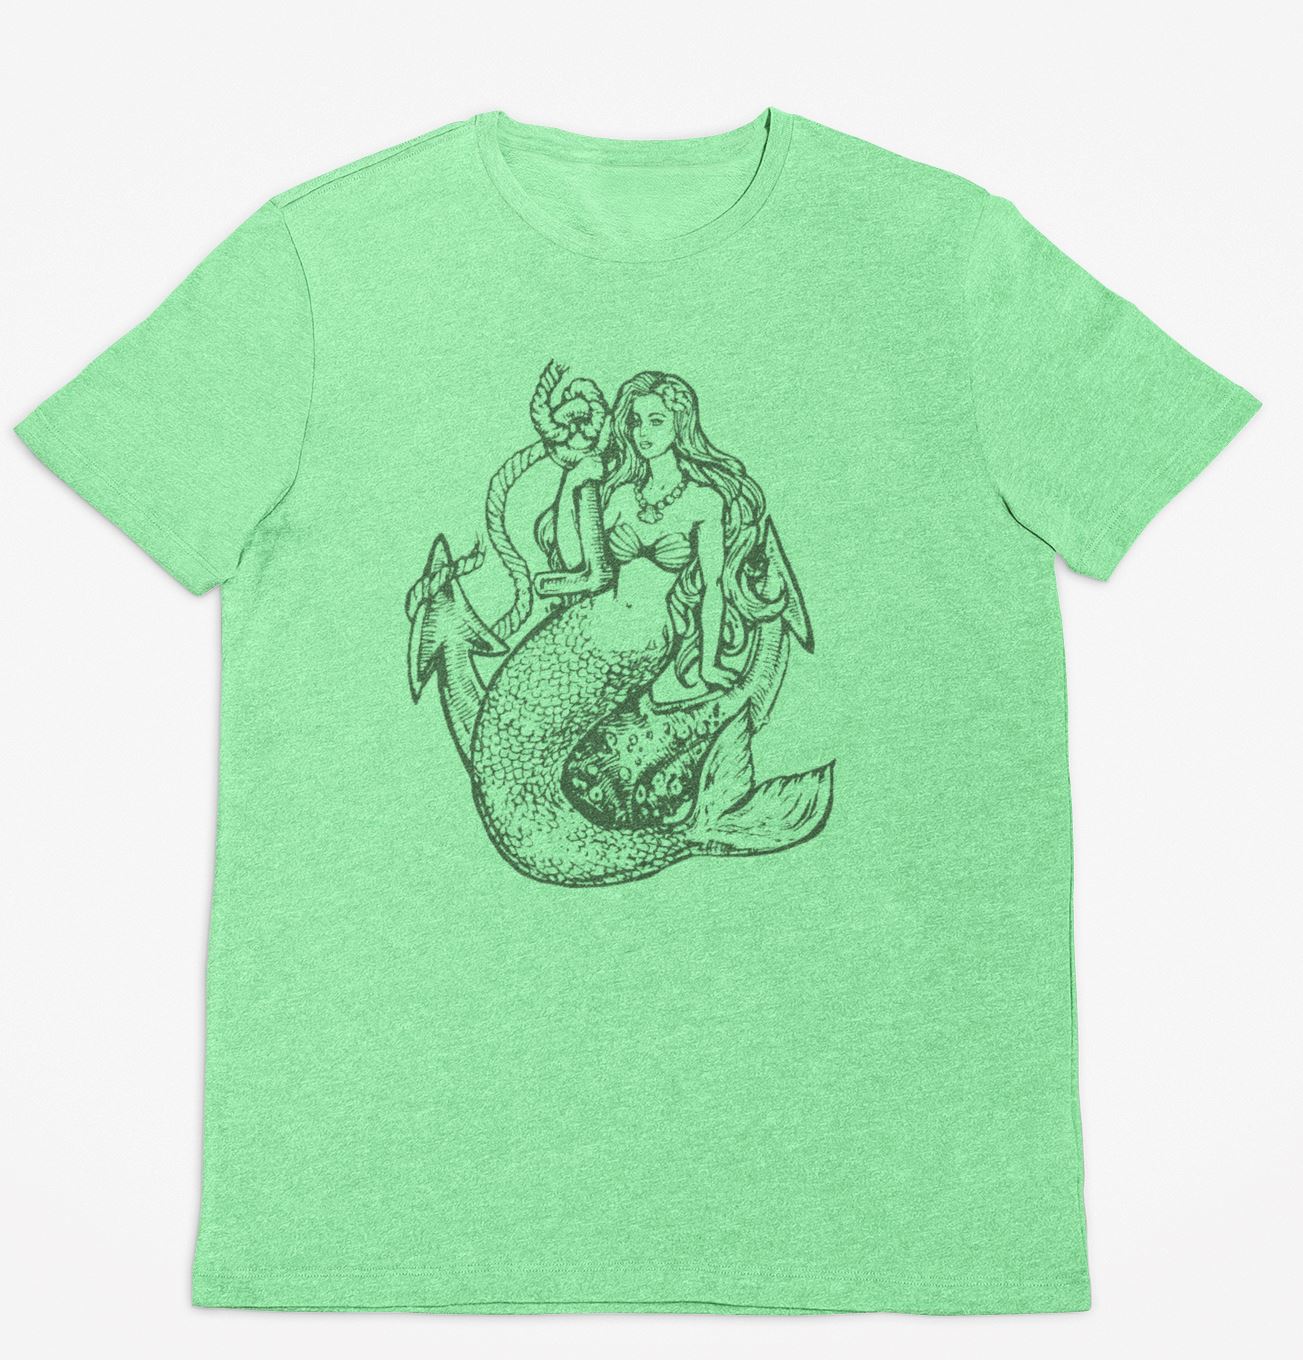 Mermaid Shirt - House of Swank